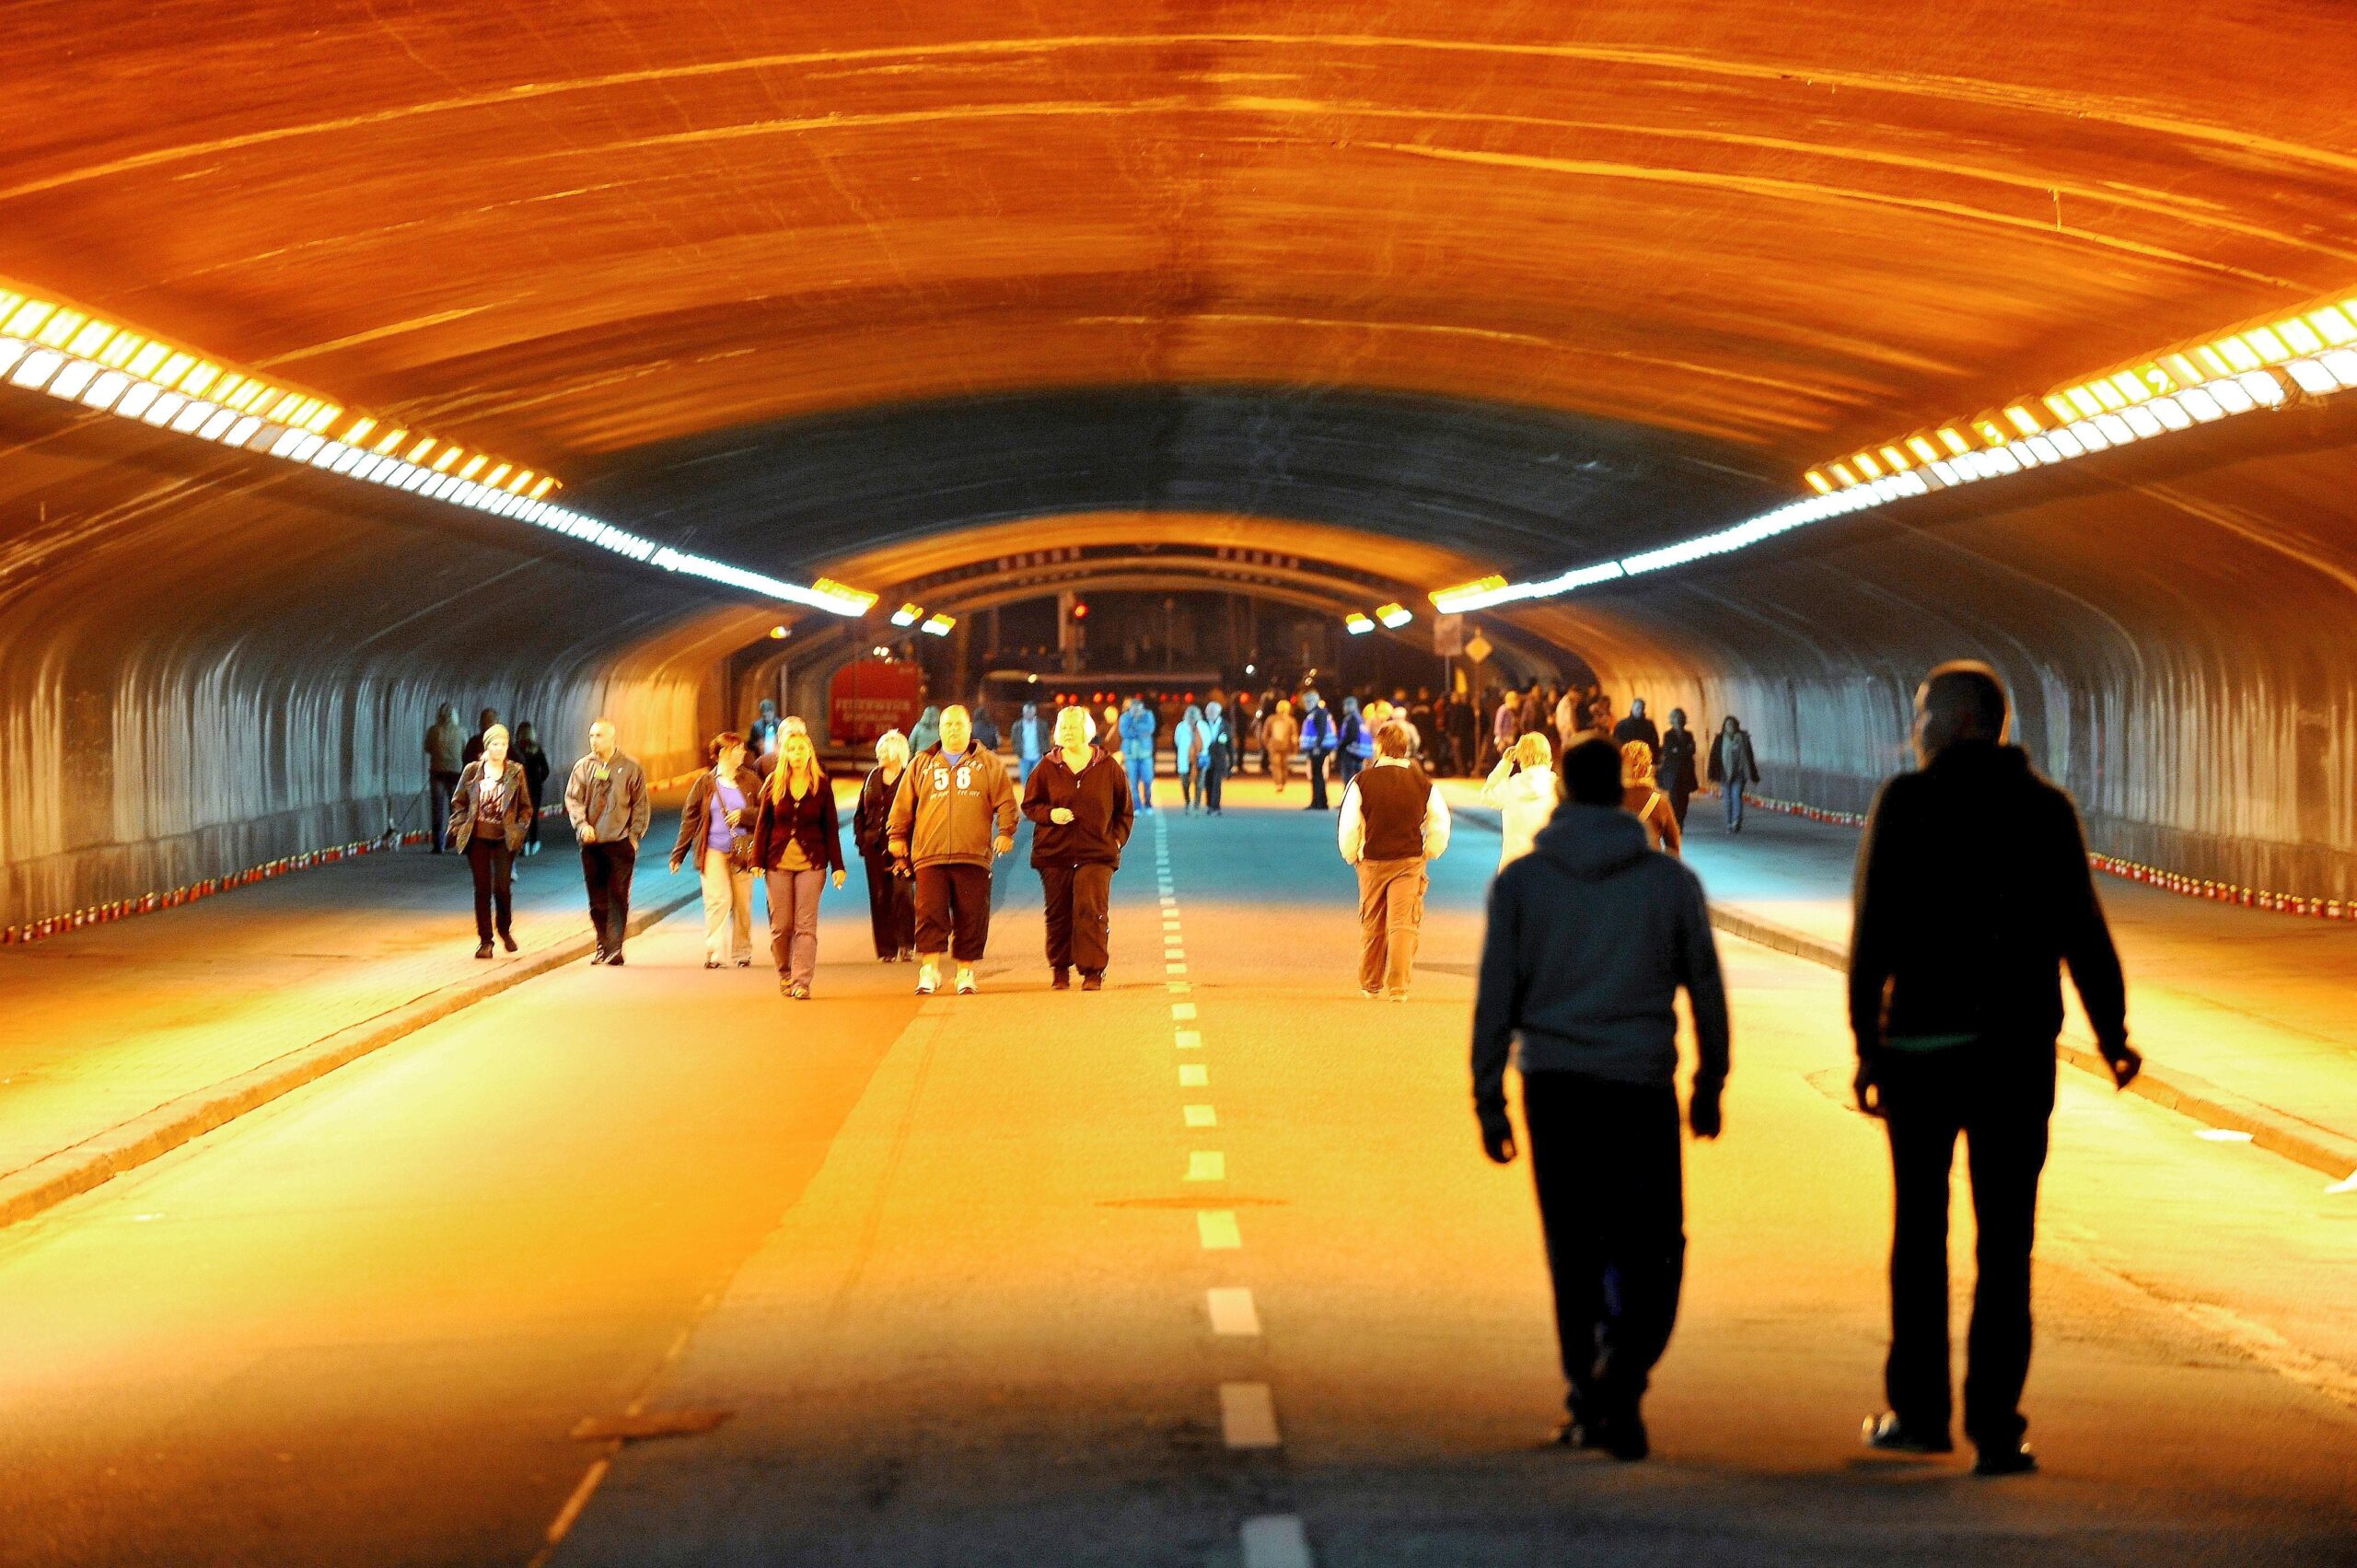 Am Wochenende des Jahrestages sperrt die Stadt den Tunnel der Karl-Lehr-Straße von Samstag- bis Montagmorgen für den Straßenverkehr. 